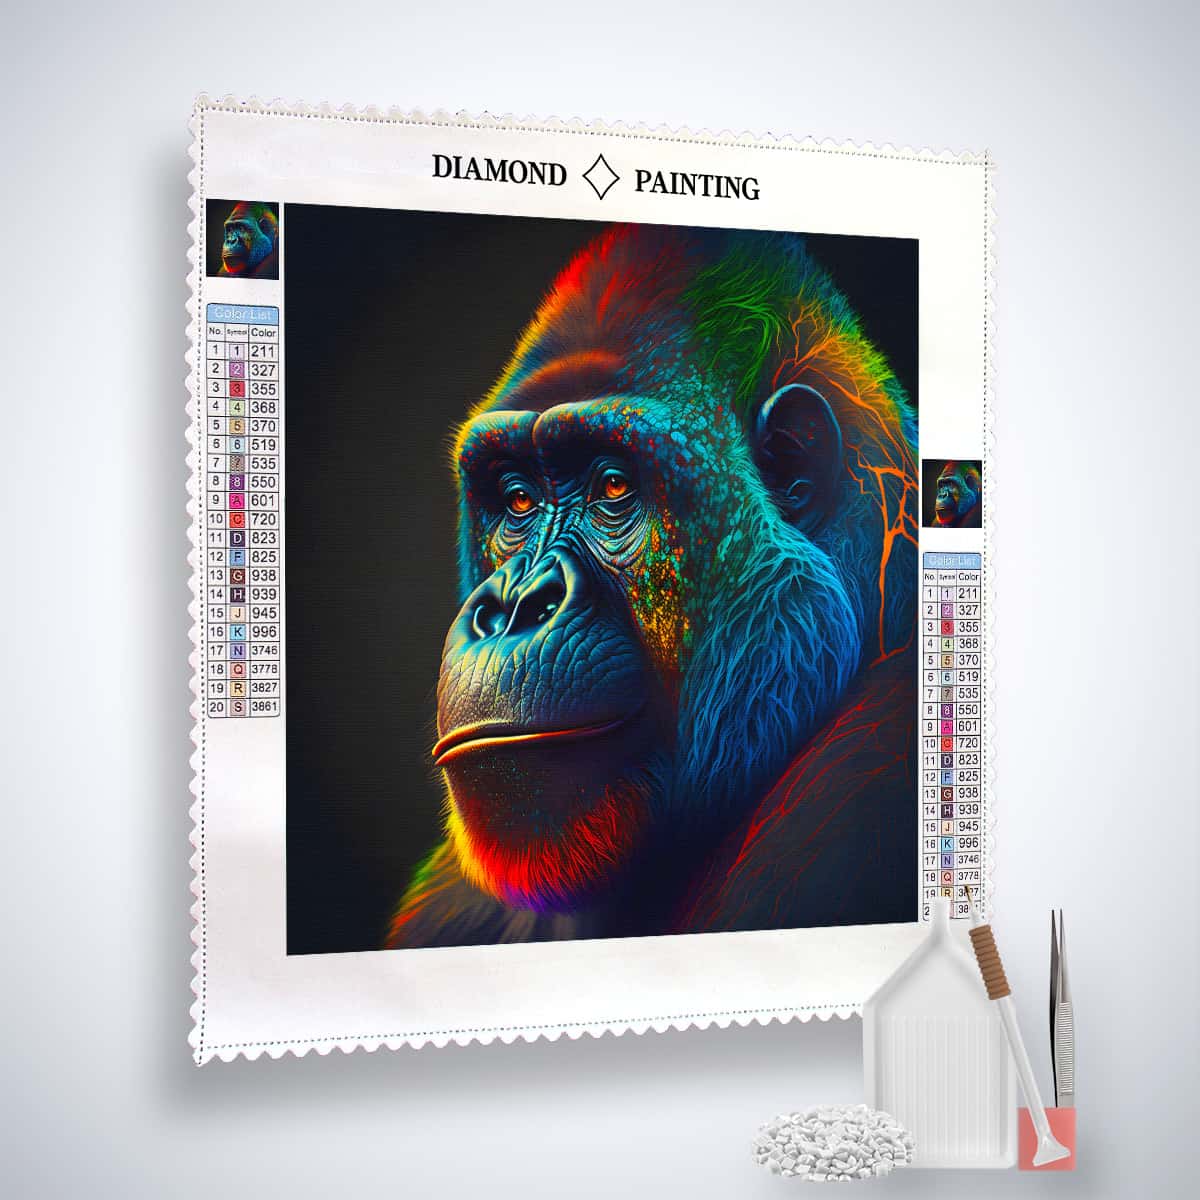 AB Diamond Painting - Gorilla Nachdenklich - gedruckt in Ultra-HD - AB Diamond, Affe, Neu eingetroffen, Quadratisch, Tiere